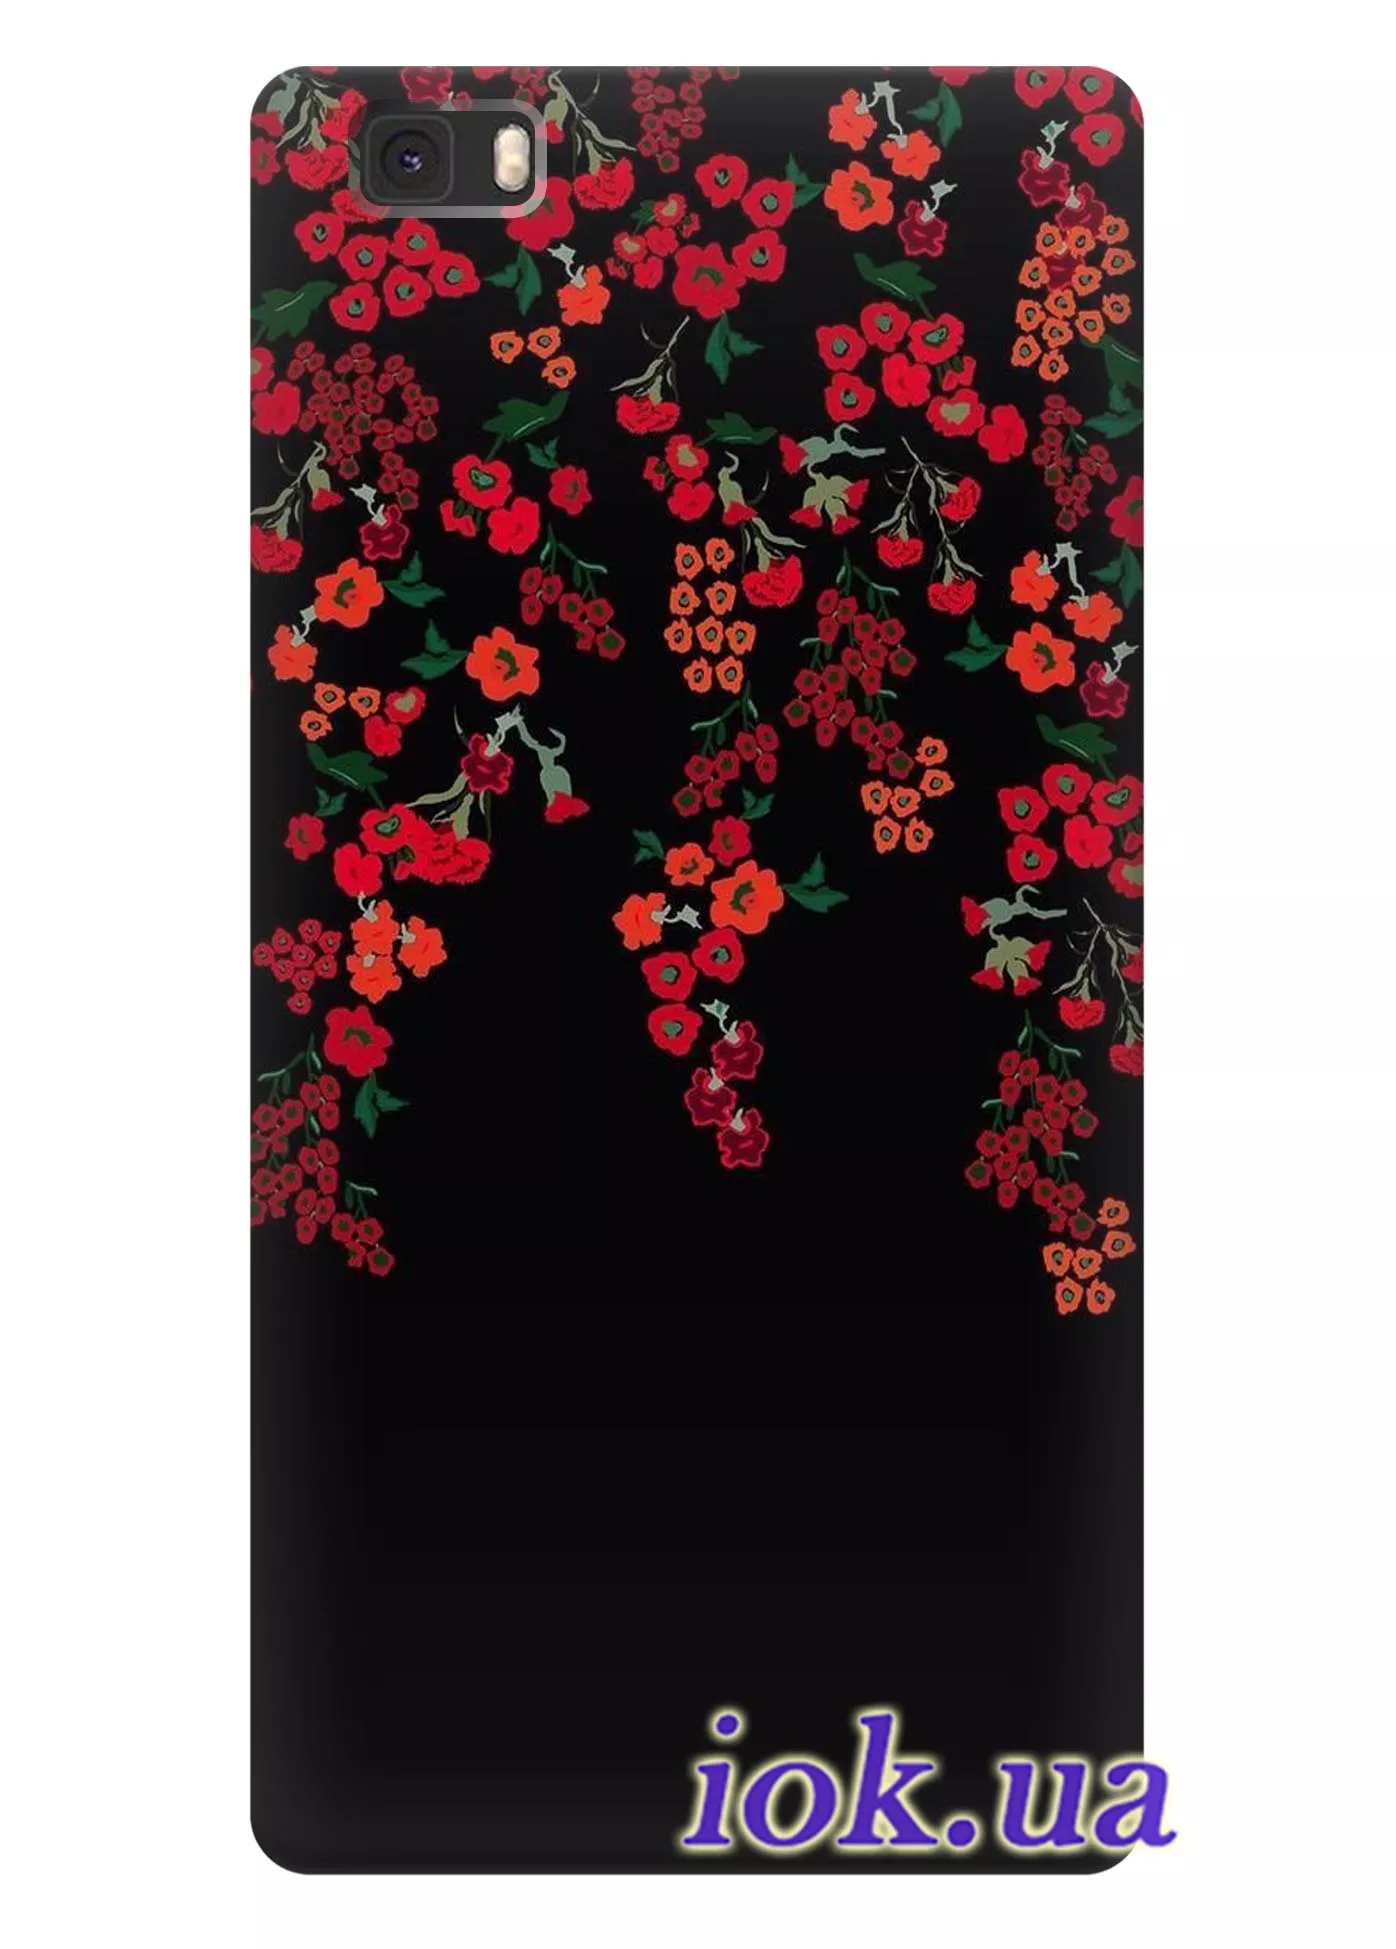 Чехол для Huawei P8 Lite - Чудные цветы